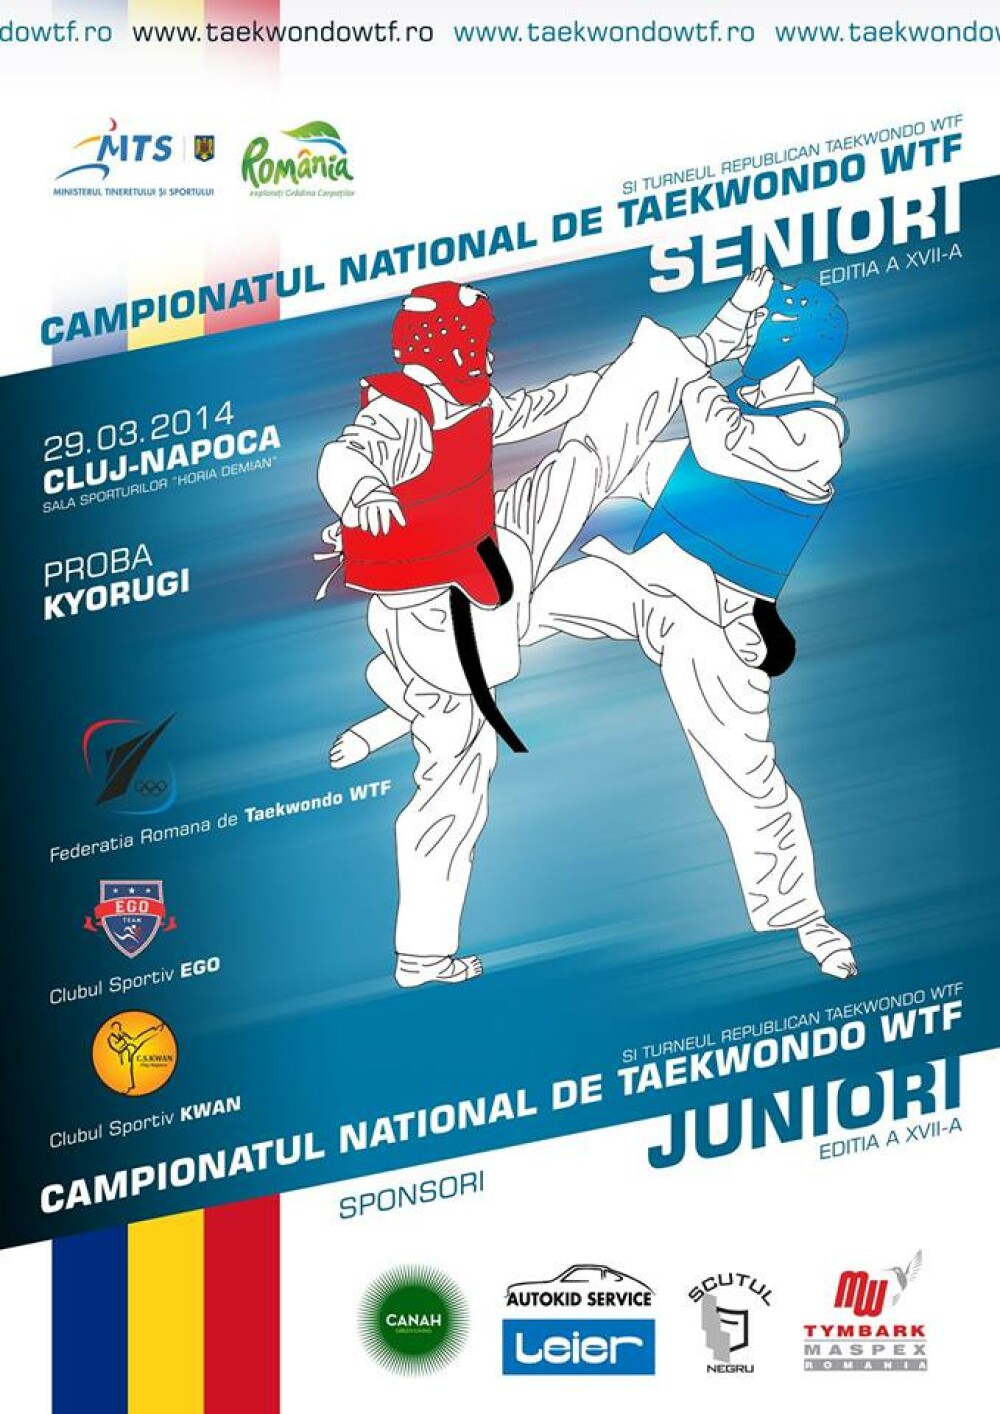 Campionatul National de Taekwondo WTF a ajuns la cea de-a XVII-a editie - Imaginea 1